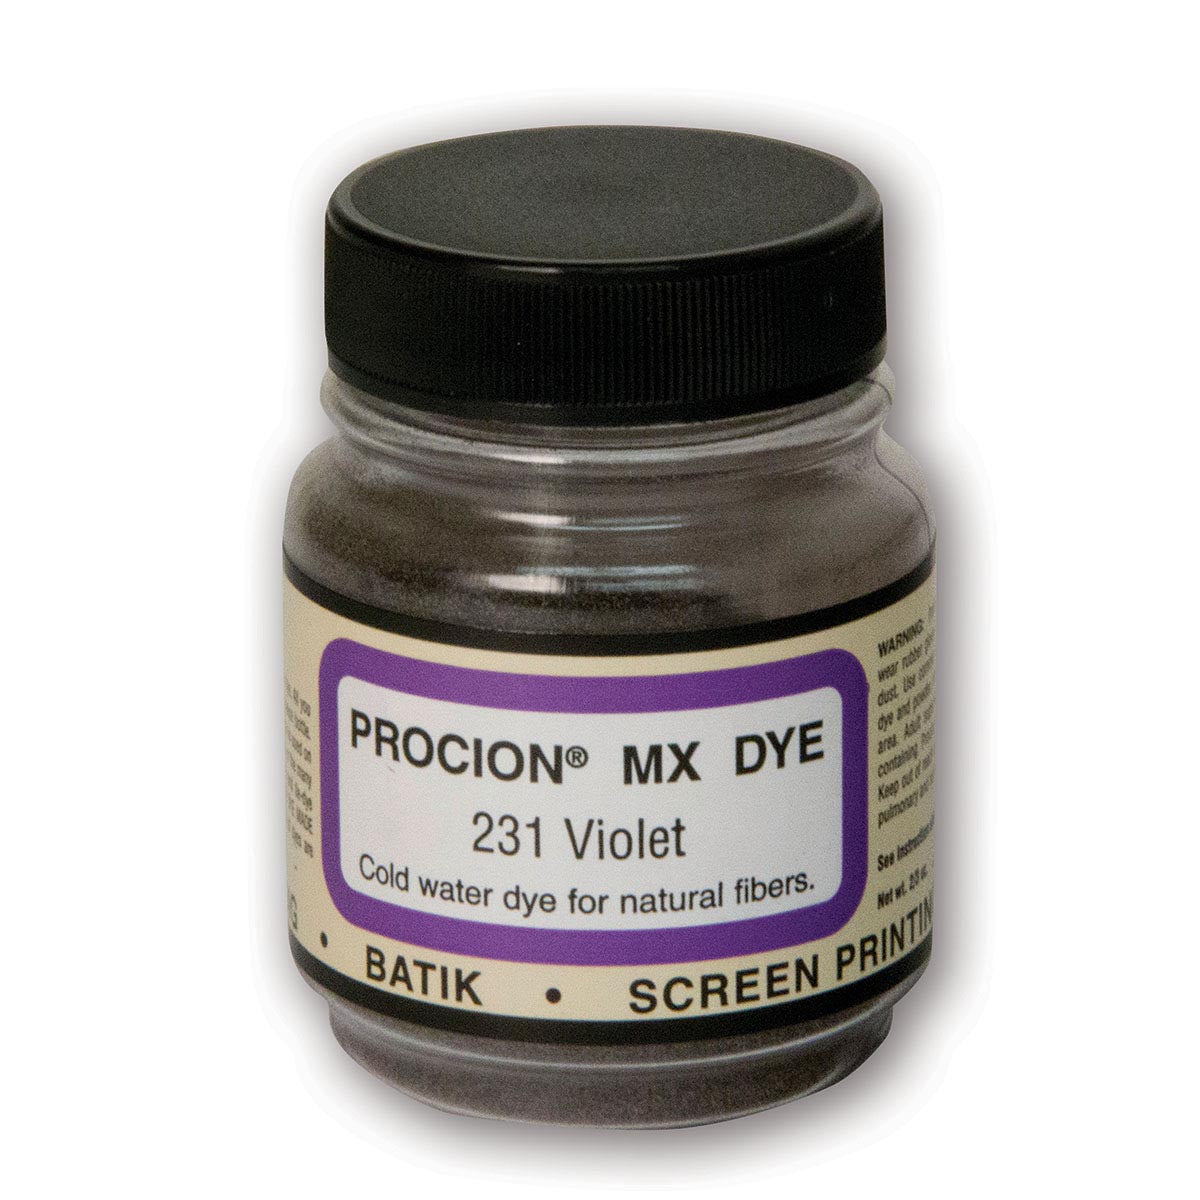 Jacquard - Procion MX Dye - Fabric Textile - Violet - 231